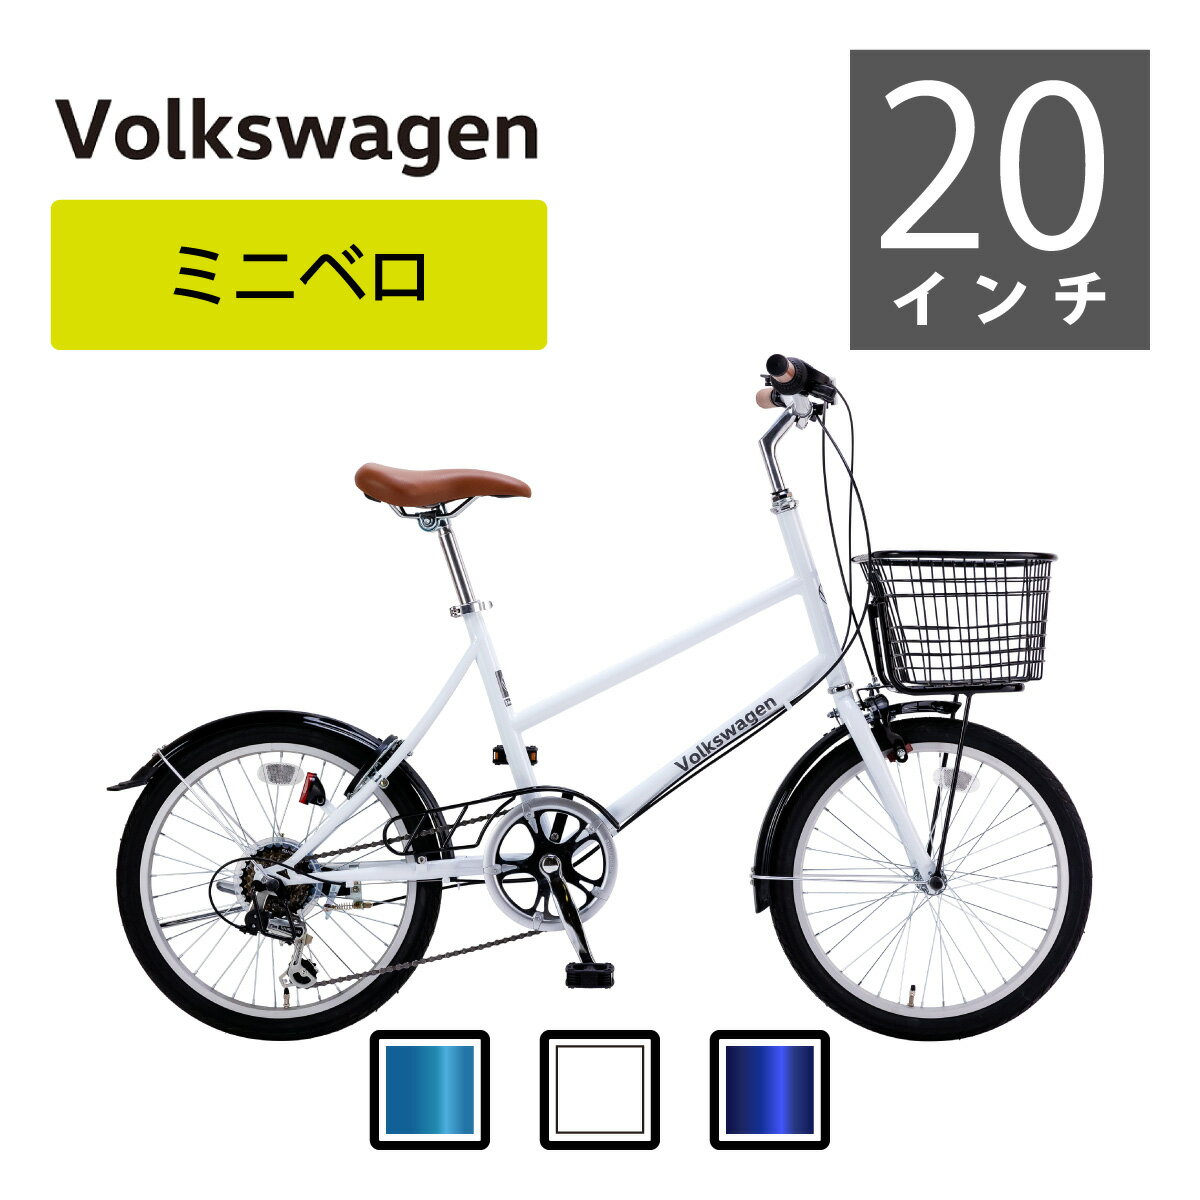 Volkswagen（フォルクスワーゲン）ミニベロ VW-206COM コンパクト設計で扱い易いVolkswagen Bicyclesのミニベロ。 ご注文の前に Shopping Guide を必ずご確認ください (テキストをクリックするとShopping Guideが開きます) 商品情報 カテゴリ ミニベロ（小径車） 品名 Volkswagen（フォルクスワーゲン）VW-206COM サイズ 20×1.75 , E/V ギア 6段変速 かご あり キャリア なし フレーム素材 スチール 全長 1500mm サドル高さ 780〜970mm 重量 約15.7kg スタンド 片スタンド 泥除け あり カギ リング錠 適正身長（目安） 160cm以上 商品が届いたら ・本製品は90％完成済みです。 ※組み立てにはある程度の技術が必要となりますので、自転車組立の知識がある方のみ、もしくは自転車整備店での組立が可能な方のみご購入をお勧めいたします。組立説明図はございませんので、あらかじめご了承願います。 ・お客様でお取付け・固定が必要：ペダル・ハンドル ・ブレーキ・変速機は配送時にズレが生じる場合がございます。また、ネジなどにも緩みが起こっている可能性もございますので、乗車前は調整・増し締めを行ってからご乗車ください。 ・工具・保証書付き。※付属工具は仮組み用の工具となります。乗車前は自転車整備店での整備・調整をお願いいたします（自転車整備店での費用は保証対象外）。 ・＜1年間の保証について＞商品到着後、1週間以内に自転車整備店で点検整備を行った場合のみ1年間の保証（保証内容は保証書に準拠）いたします。 ・日常時でも乗車前には必ず点検・調整してください。 ※当店では組立・調整について、一切の責任を負いかねます。 保証 【初期不良期間】商品到着より1週間 ・部品供給での保証になります。修理はできません。 ・当店に点検・整備をご依頼の場合、往復送料はお客様負担となります。 ・輸入品のため擦りキズや塗装剥がれ、フェンダー曲がり等は保証対象外です。 ・タイヤ、チューブ、ブレーキゴム等の消耗品は保証対象外です。 ・プレゼント・サービス品は保証対象外です。 ・PL保険加入済み 防犯登録について 防犯登録は、お近くの「防犯登録加盟店」（自転車販売店、ホームセンターなど自転車取り扱い店）または所轄の警察署にご相談下さい。 （料金は各都道府県によっても異なりますが500円〜1,000円が一般的です） その他 ・予告なしに価格、色、デザイン、仕様など変更する場合があります。 ・商品カラーはイメージカラーとなります。ご覧のディスプレイ環境および、撮影環境によって同一商品であっても色合い・色の濃淡に差が生じる場合がございます。 4511577064853(WHITE), 4511577064860(GREEN), 4511577064877(NAVY) コンパクト 自転車 ワールドワイドバイク WWB